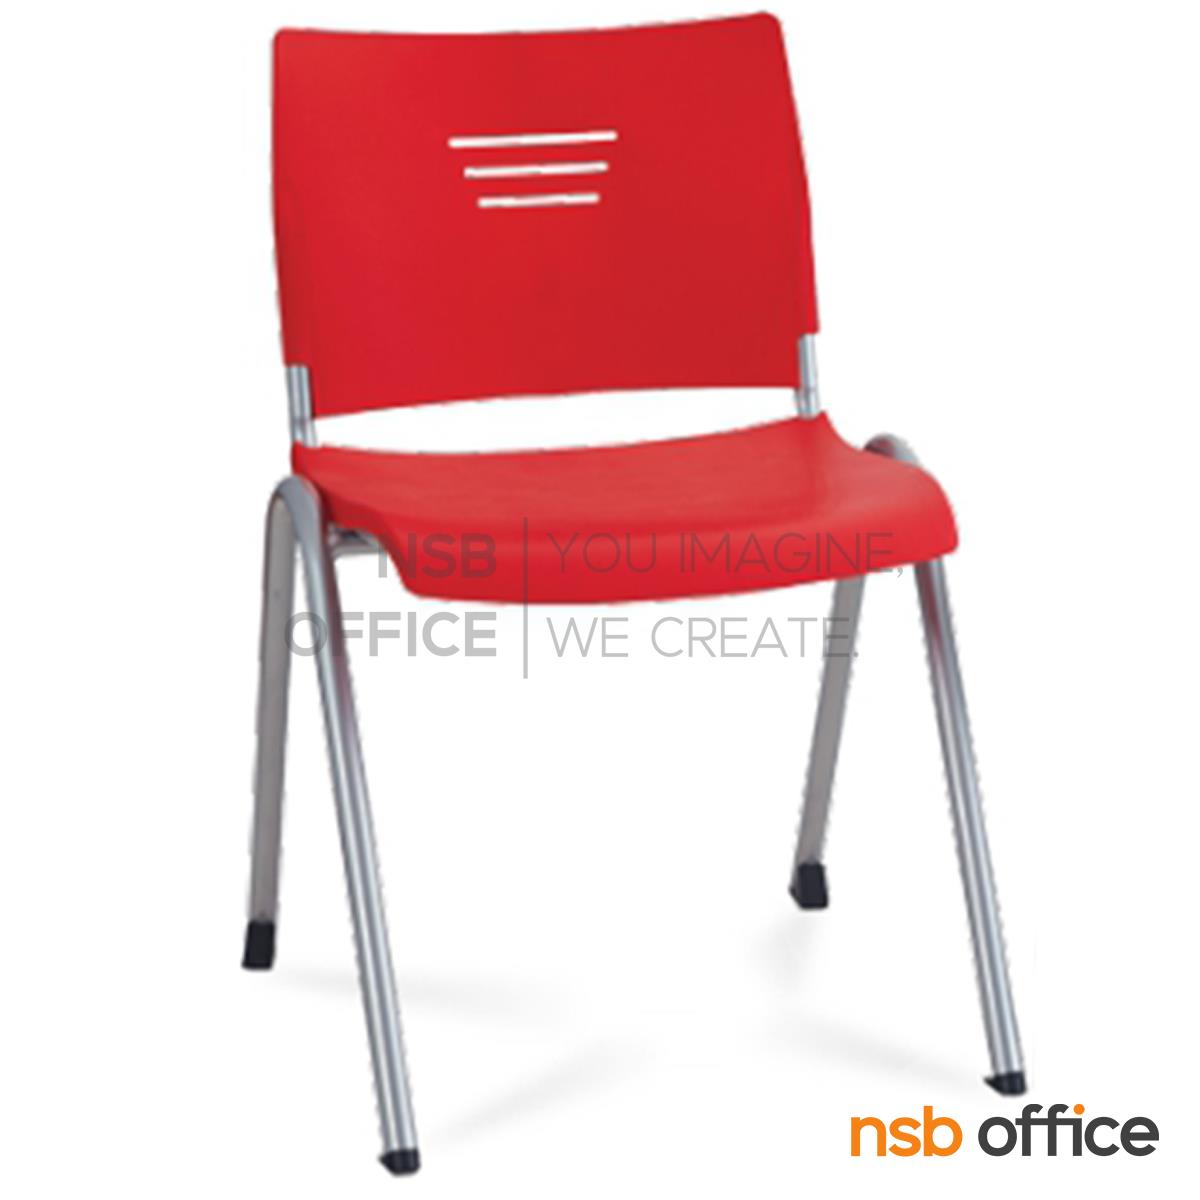 B05A132:เก้าอี้อเนกประสงค์เฟรมโพลี่ รุ่น Mozen (โมเซน)  ขาเหล็กพ่นสีเทาเมทัลลิค 